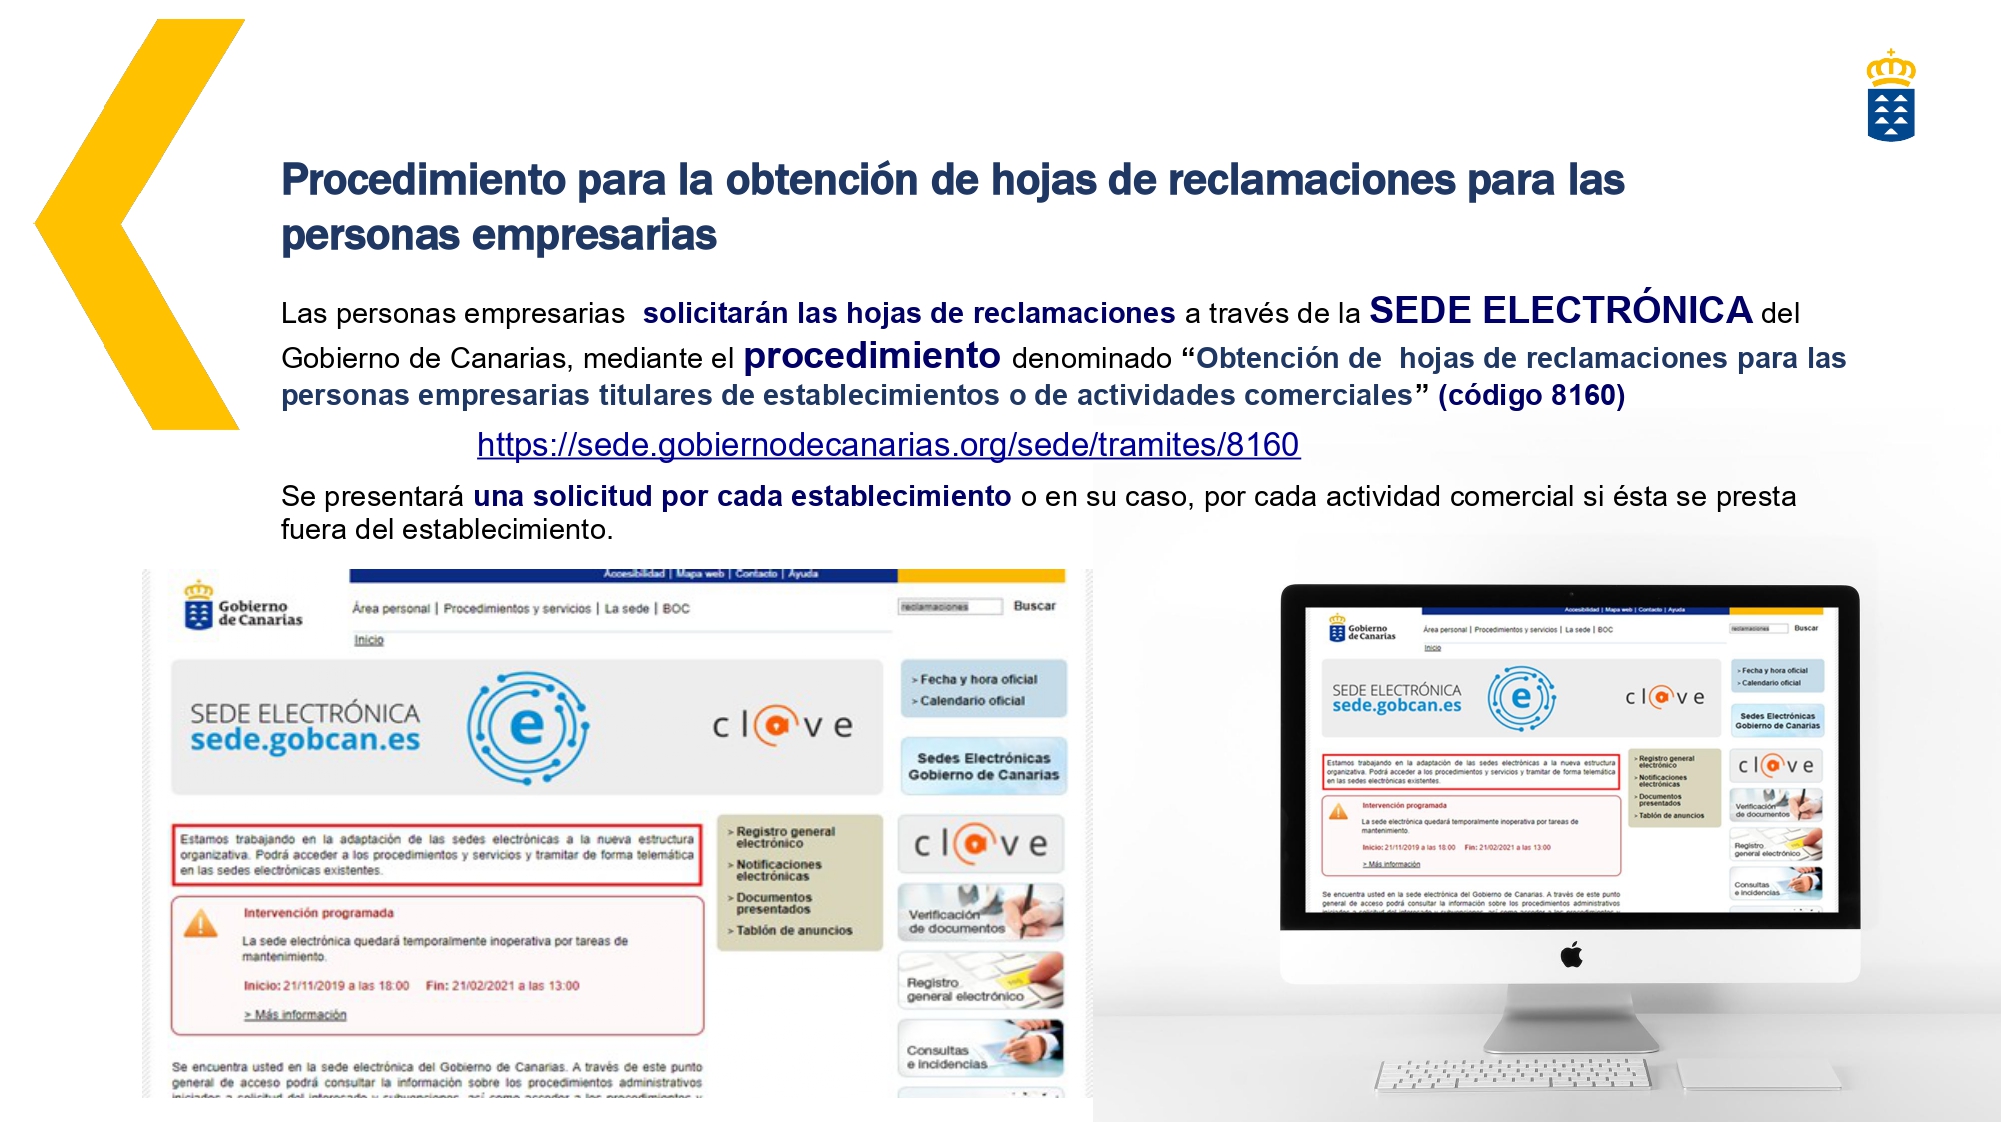 EMPRESAS-Obtencion_Hojas_de_Reclamaciones_Consumo (1)_page-0003